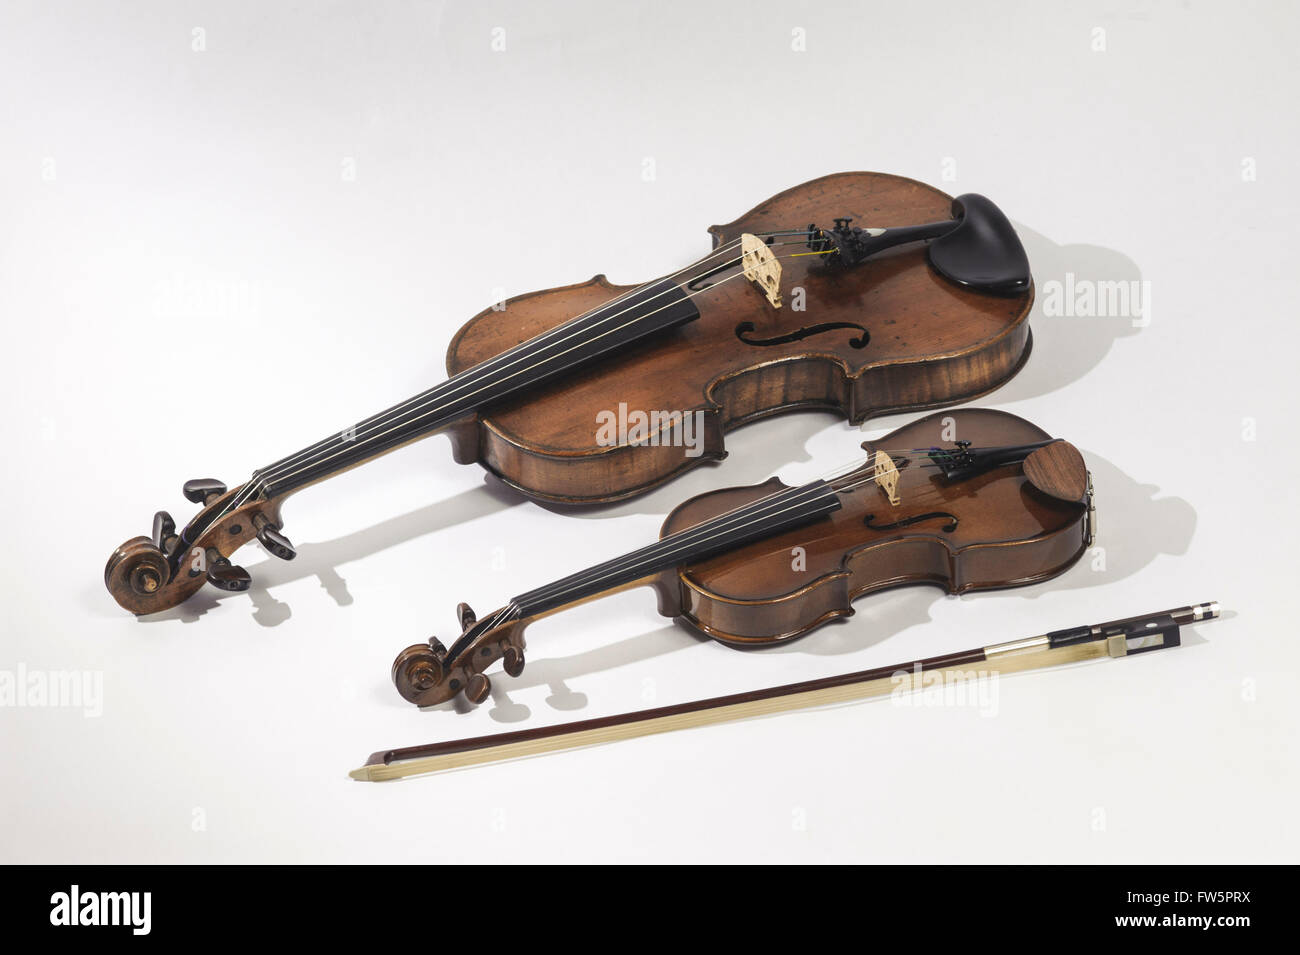 Violons, trimestre format et grand format, avec taille 1/4- arc. Violon allemand, fin du 19e siècle violon. Étudiant tchèque moderne Banque D'Images